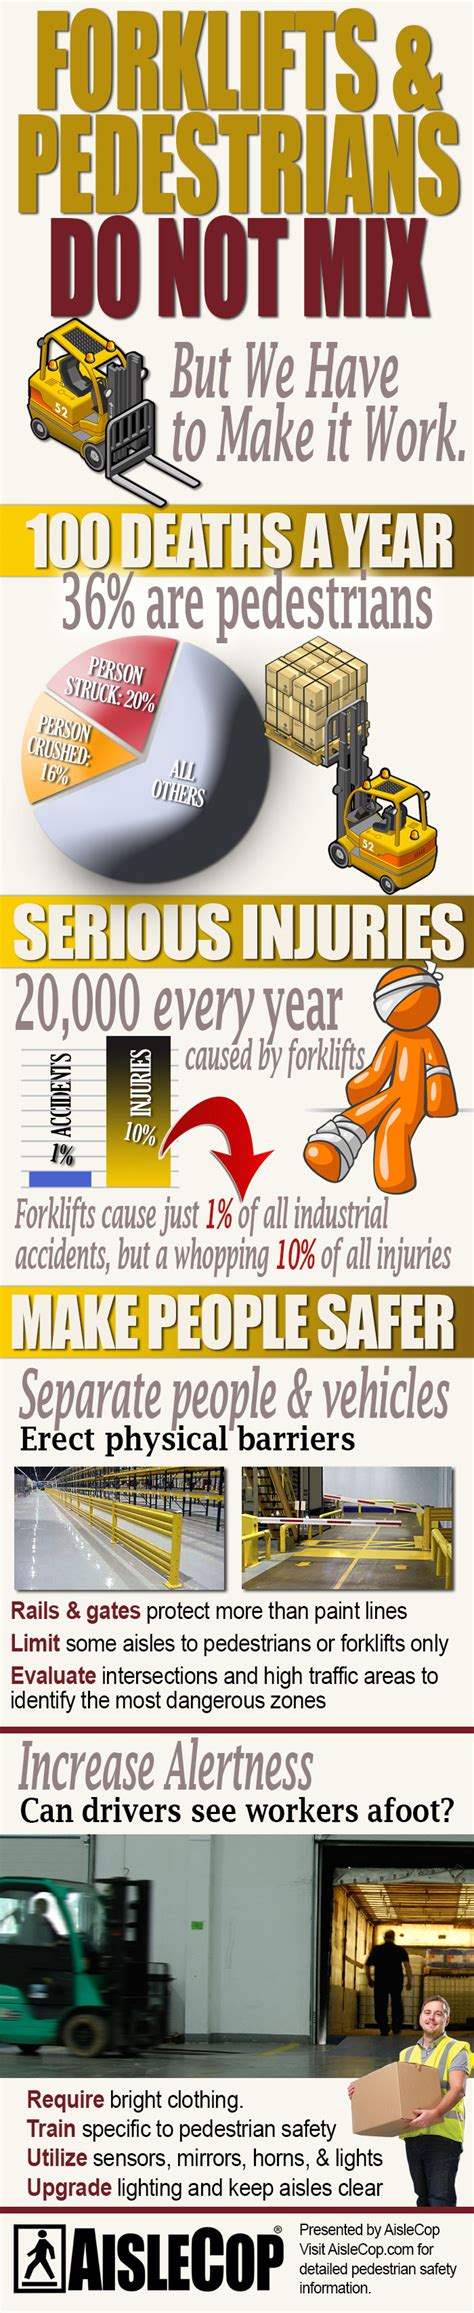 Fork Truck Pedestrian Safety